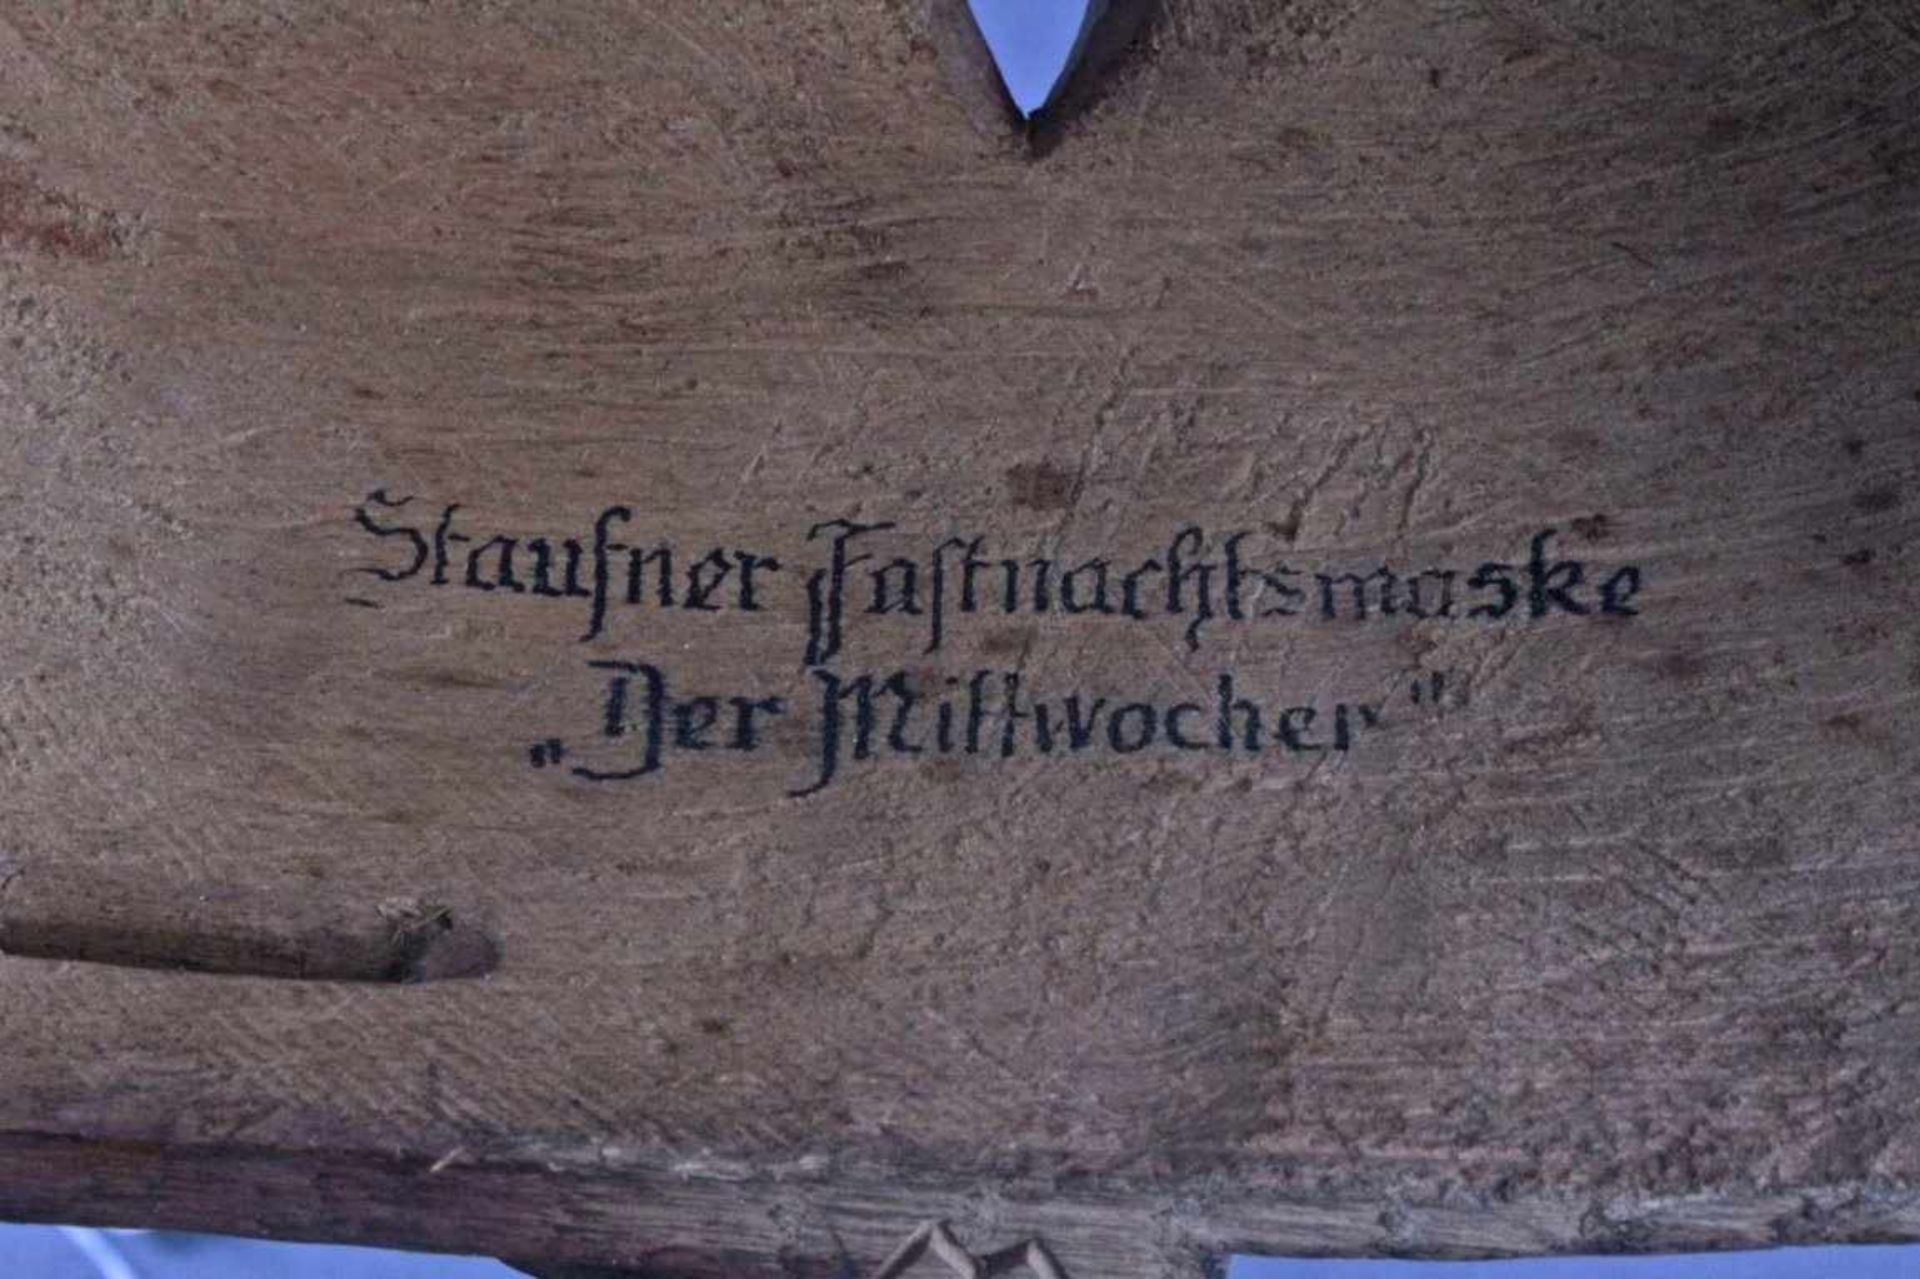 Staufner Fasnachtsmaske, "Der Mittwocher"Holz bemalt, ca. 27 x 22 cm - Bild 3 aus 4